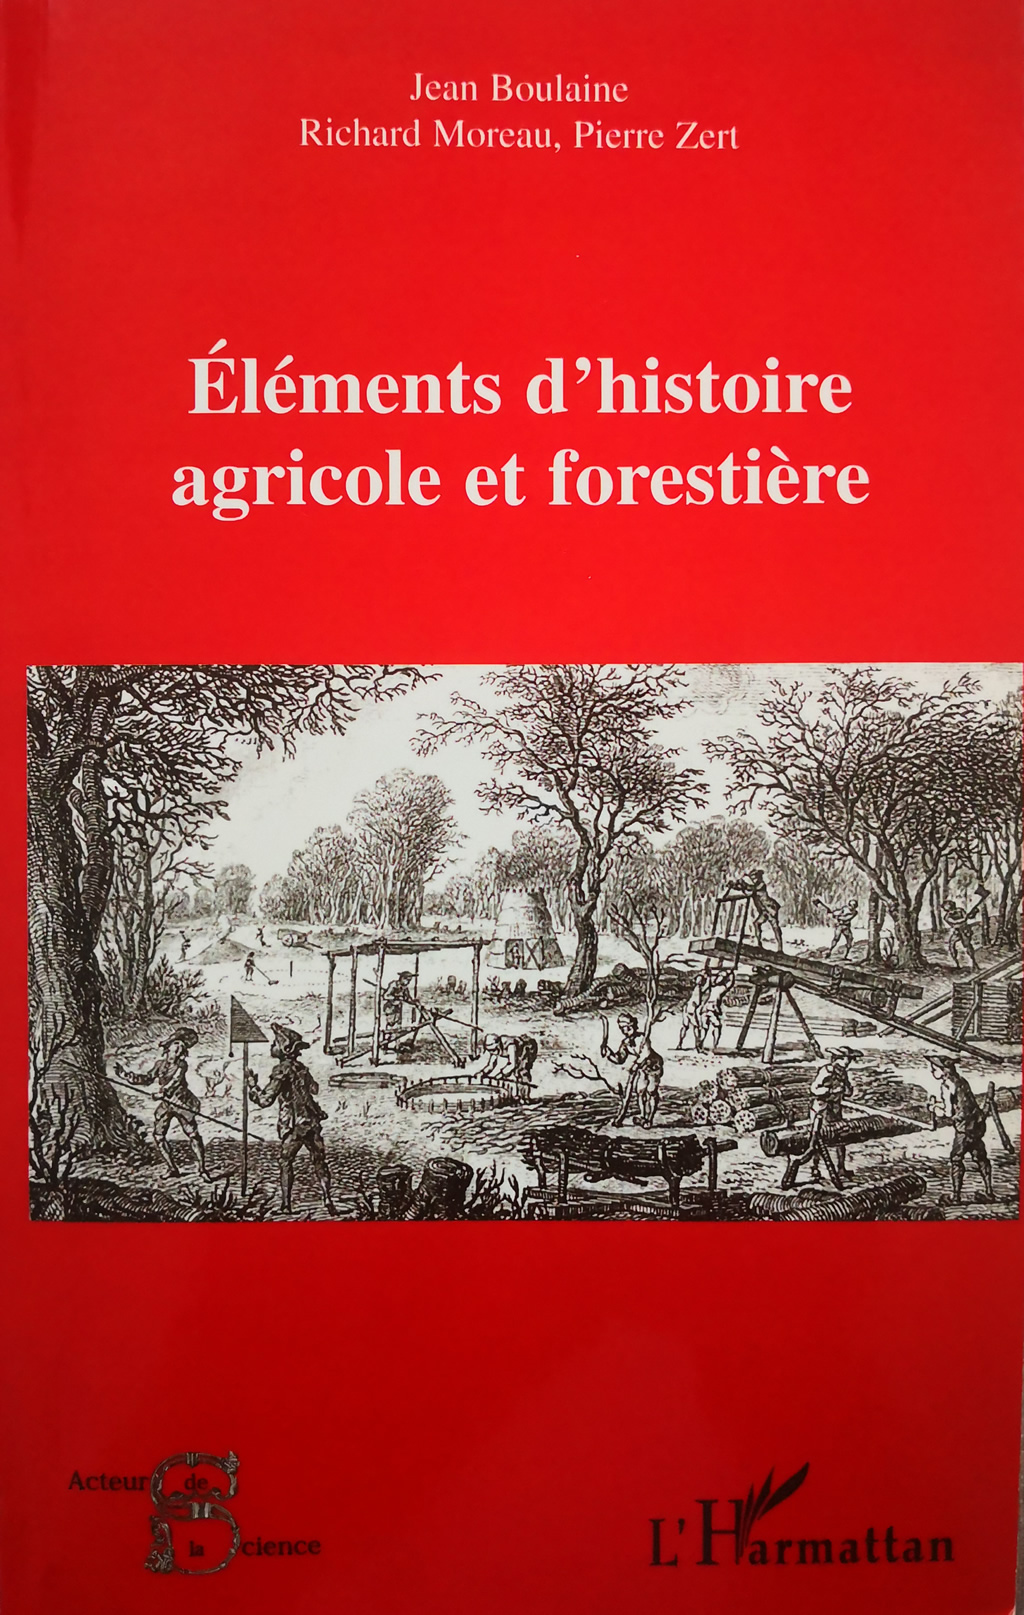 Élements d'histoire agricole et forestière - Document 1